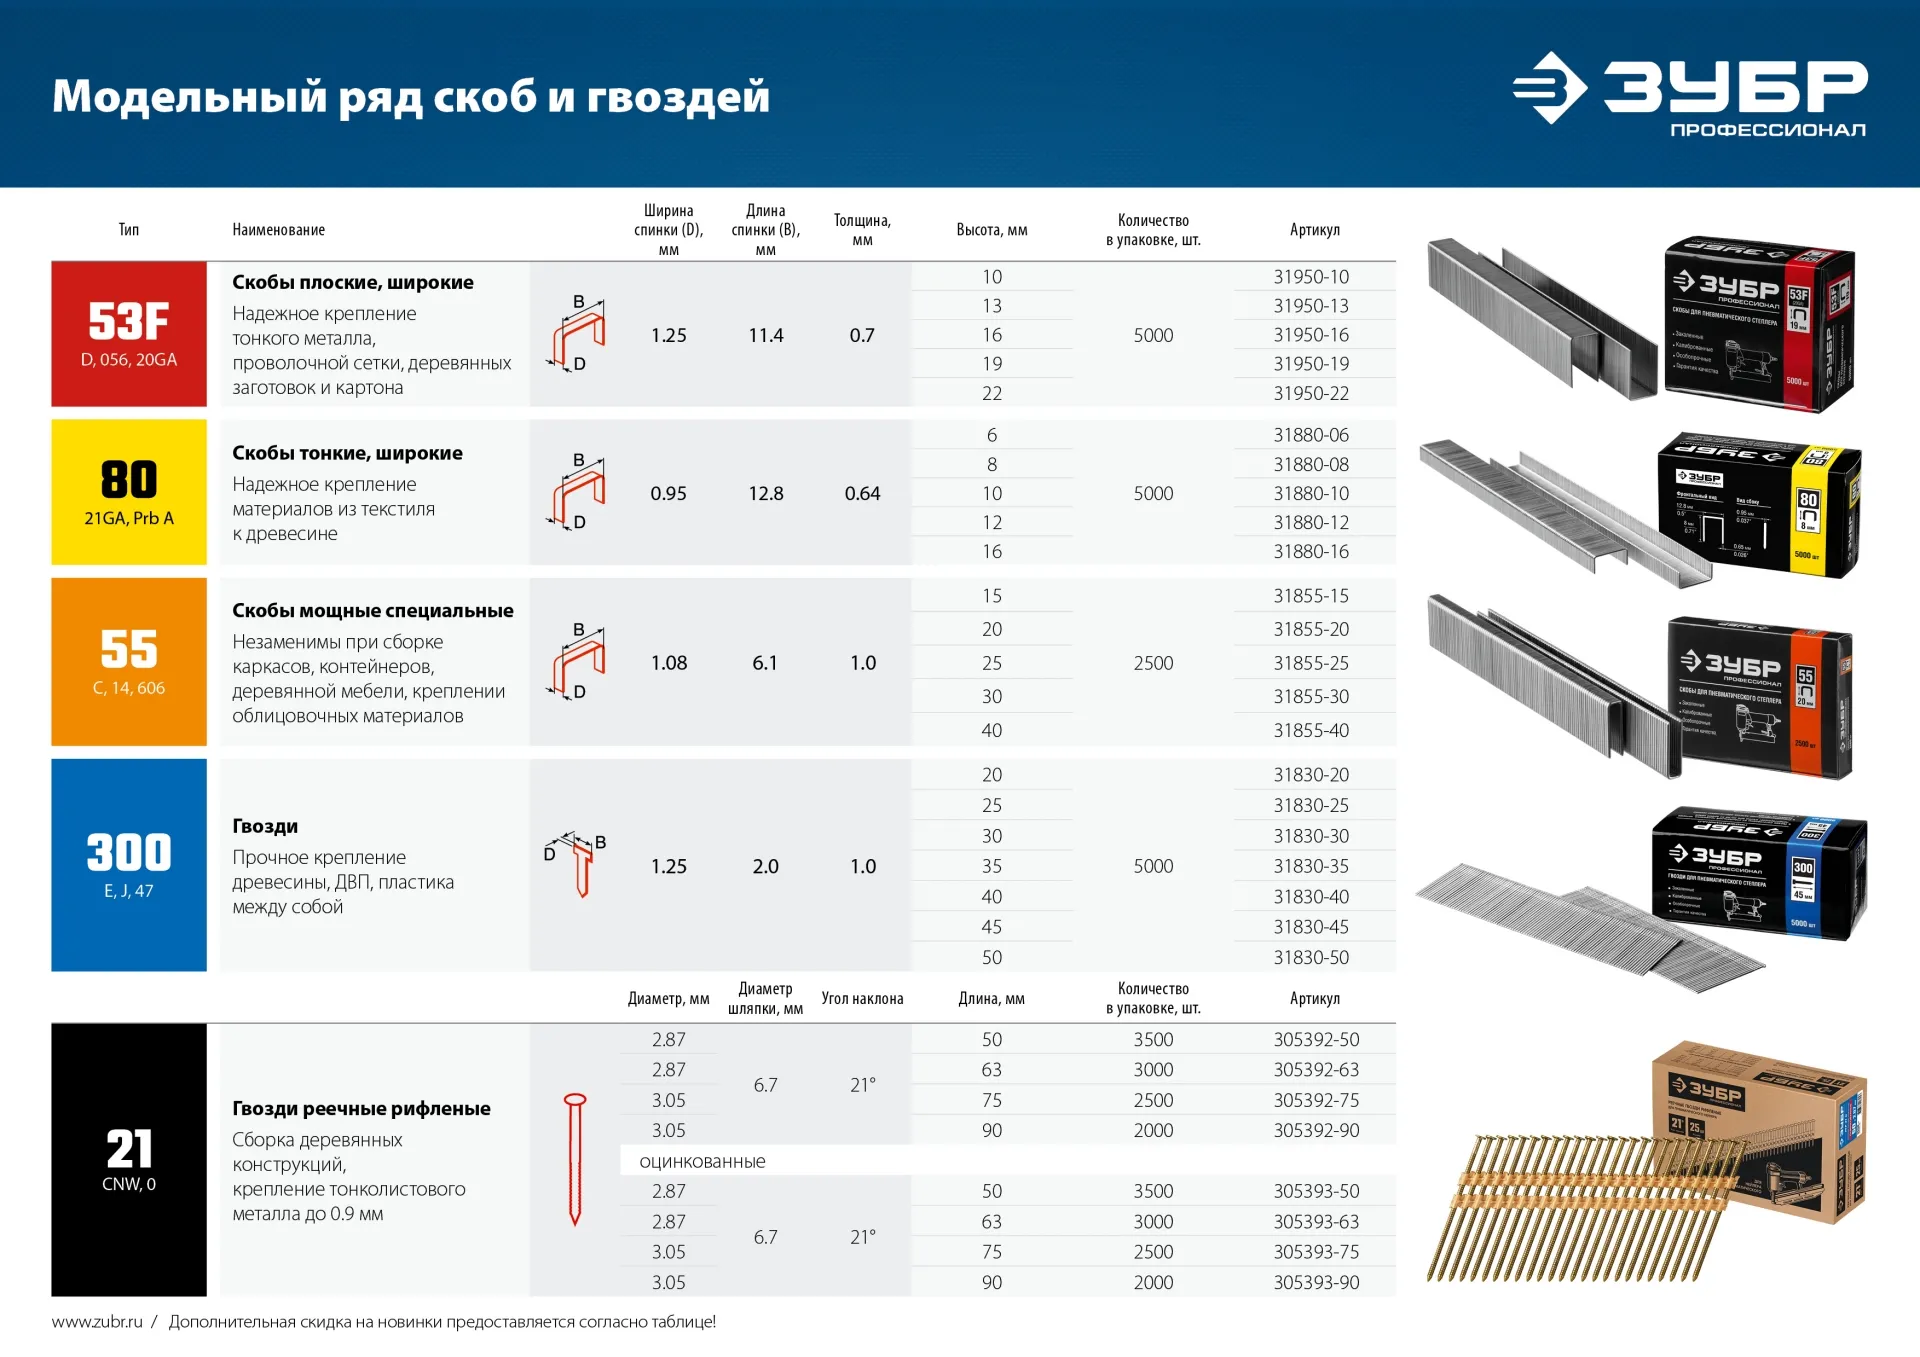 Пневматический нейлер-степлер (гвозде/скобозабиватель) 2-в-1 ЗУБР Т55/300, скобы тип 55 (16-40мм) и гвоздей 300 (10-50 мм), Профессионал